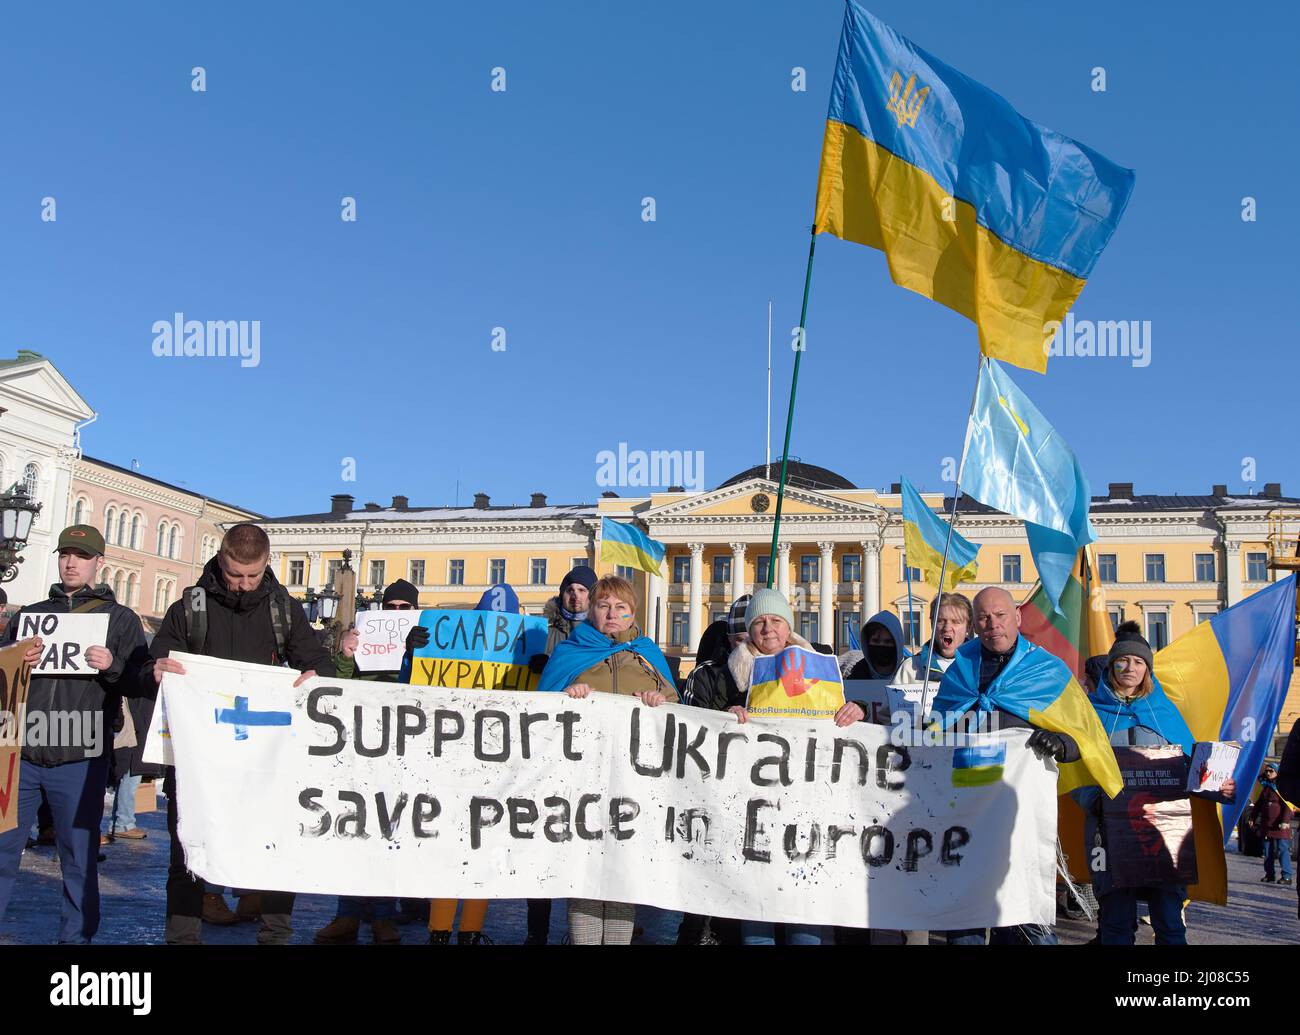 Helsinki, Finlande - le 26 février 2022 : manifestations dans un rassemblement contre l'agression militaire russe et l'occupation de l'Ukraine transportant le soutien Ukrain Banque D'Images